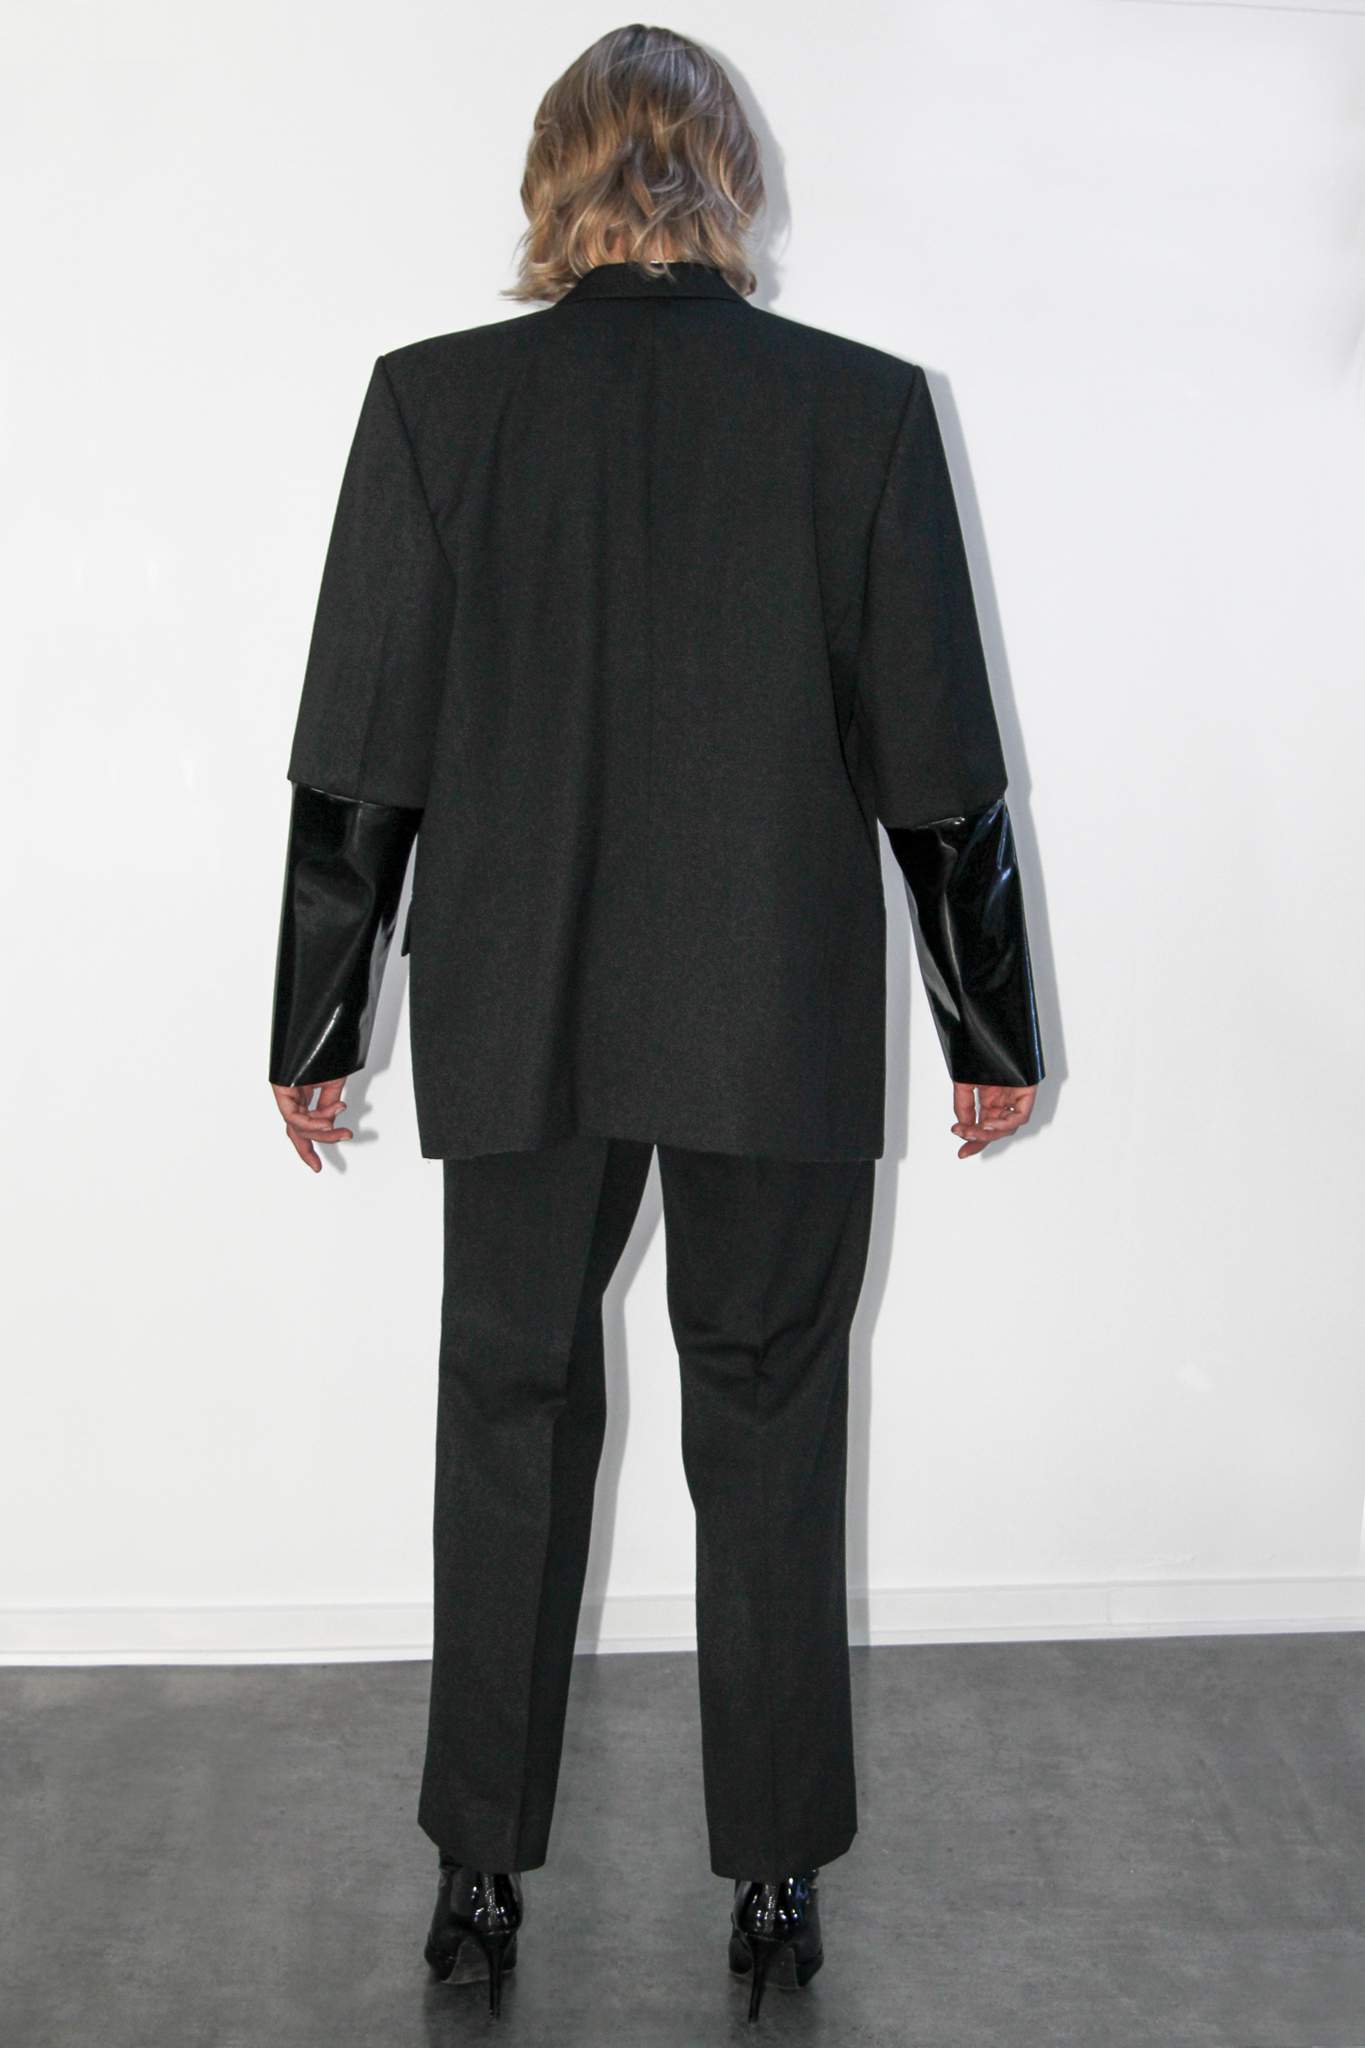 Black vinyl suit